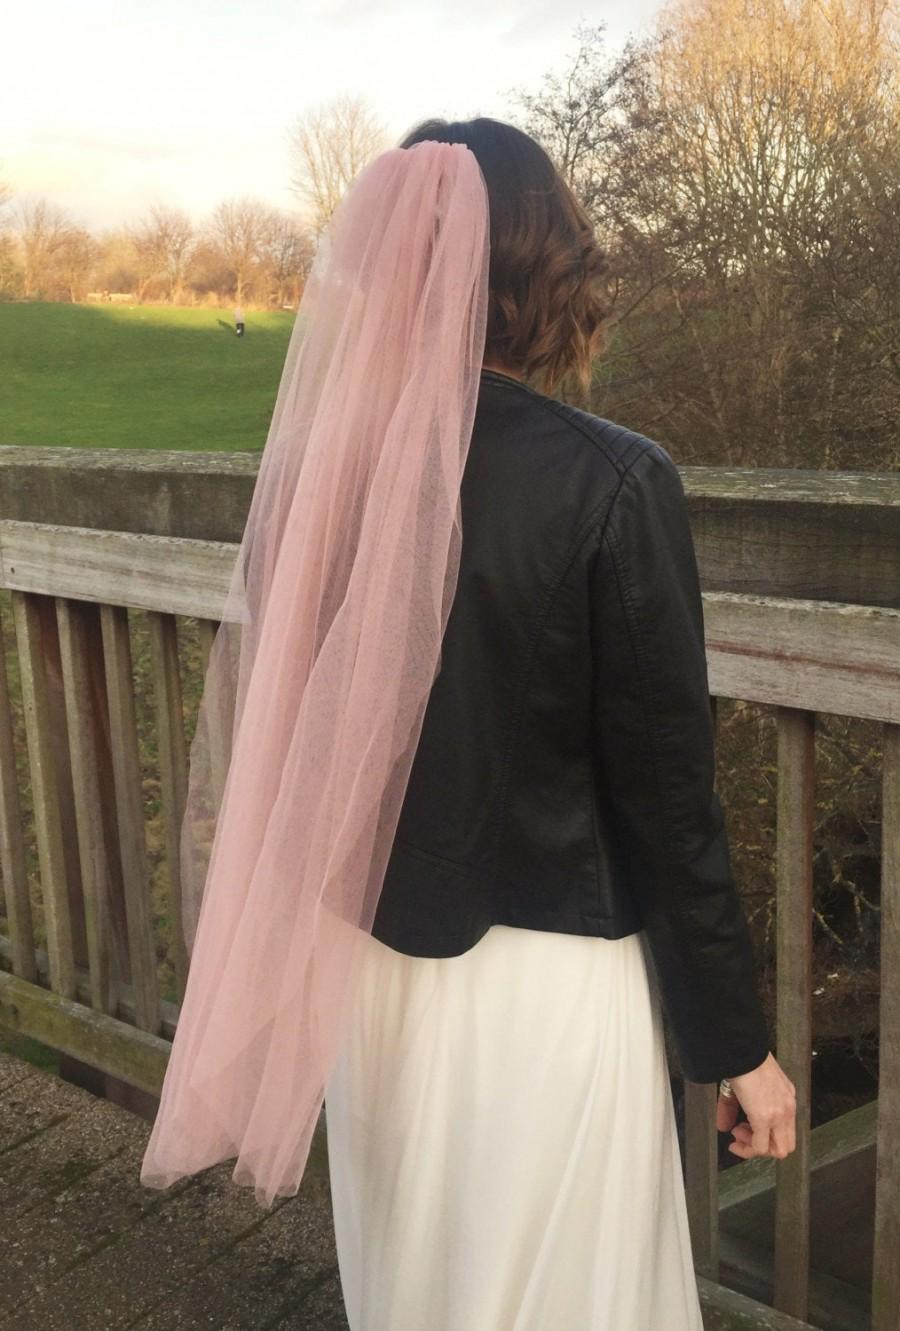 Wedding - Blush Veil - Bridal Veil - Pink Wedding Veil - Fingertip Veil - Short Veil - Blush Wedding Veil - Unique Veil - Boho Veil